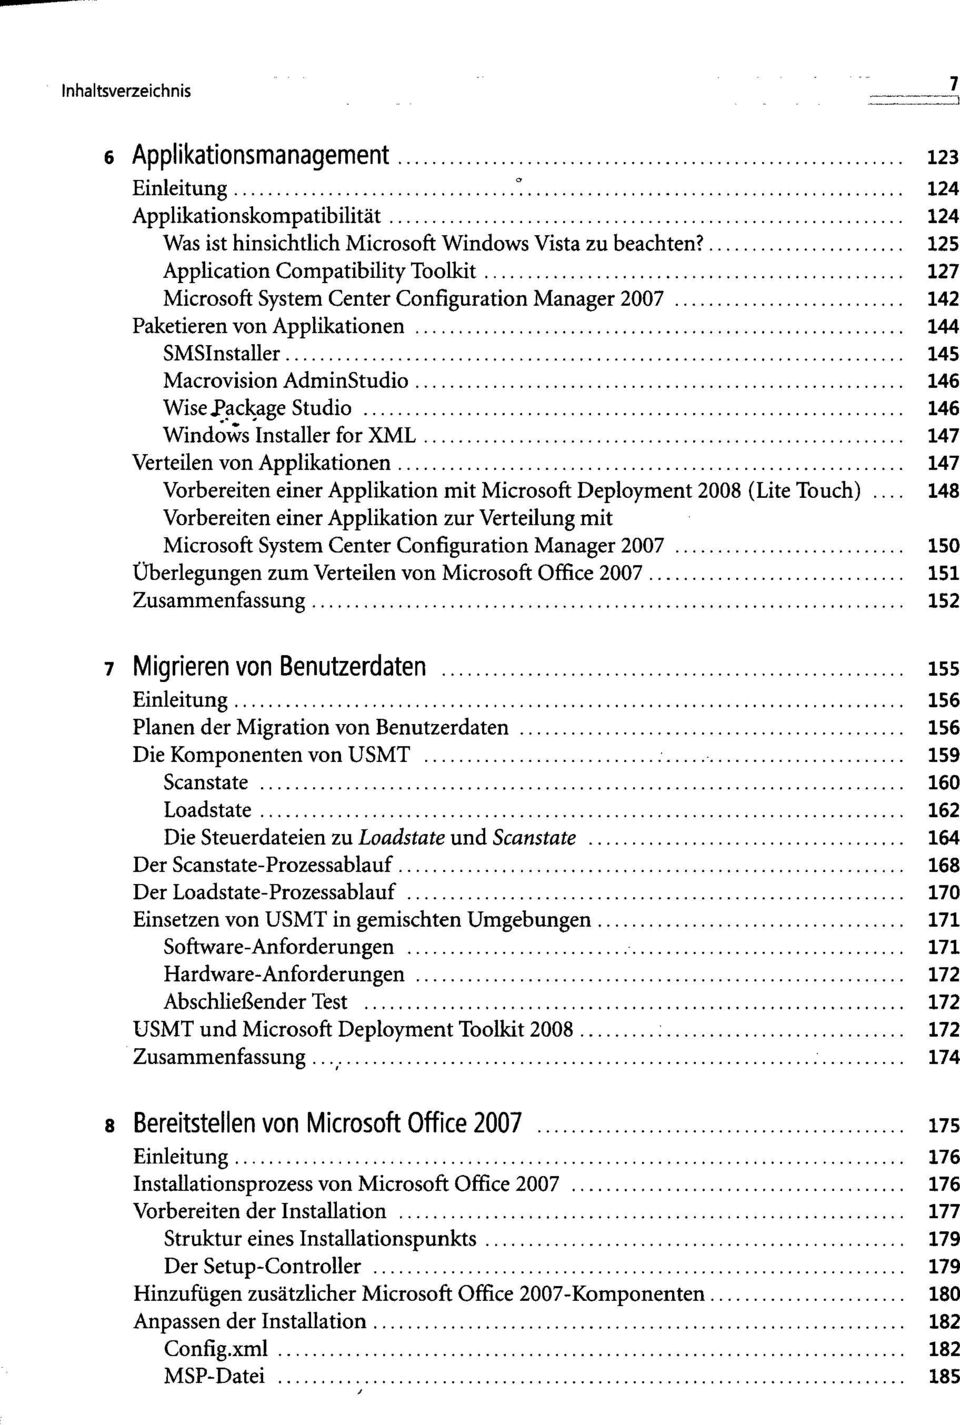 Windows Installer for XML 147 Verteilen von Applikationen 147 Vorbereiten einer Applikation mit Microsoft Deployment 2008 (Lite Touch) 148 Vorbereiten einer Applikation zur Verteilung mit Microsoft